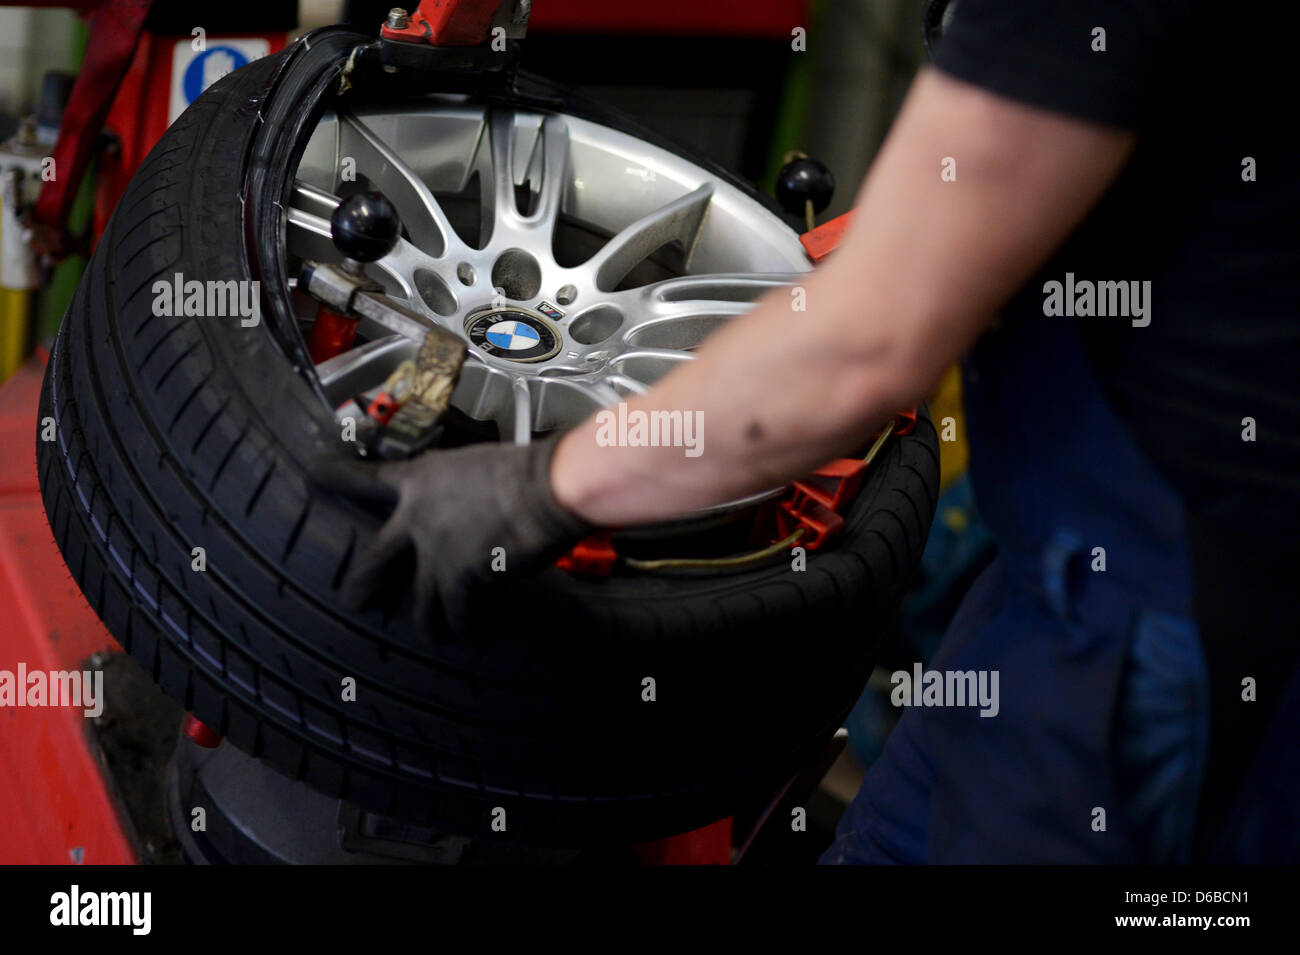 Un mécanicien vis des pneus d'été une BMW dans un atelier à Bayreuth, Allemagne, 16 avril 2013. Les pneus sont en train de changer plus tard cette année en raison de la longueur de l'hiver. Fatigué de l'hiver devrait être supprimé qu'à une température moyenne d'au moins 7 degrés. Photo : DAVID EBENER Banque D'Images